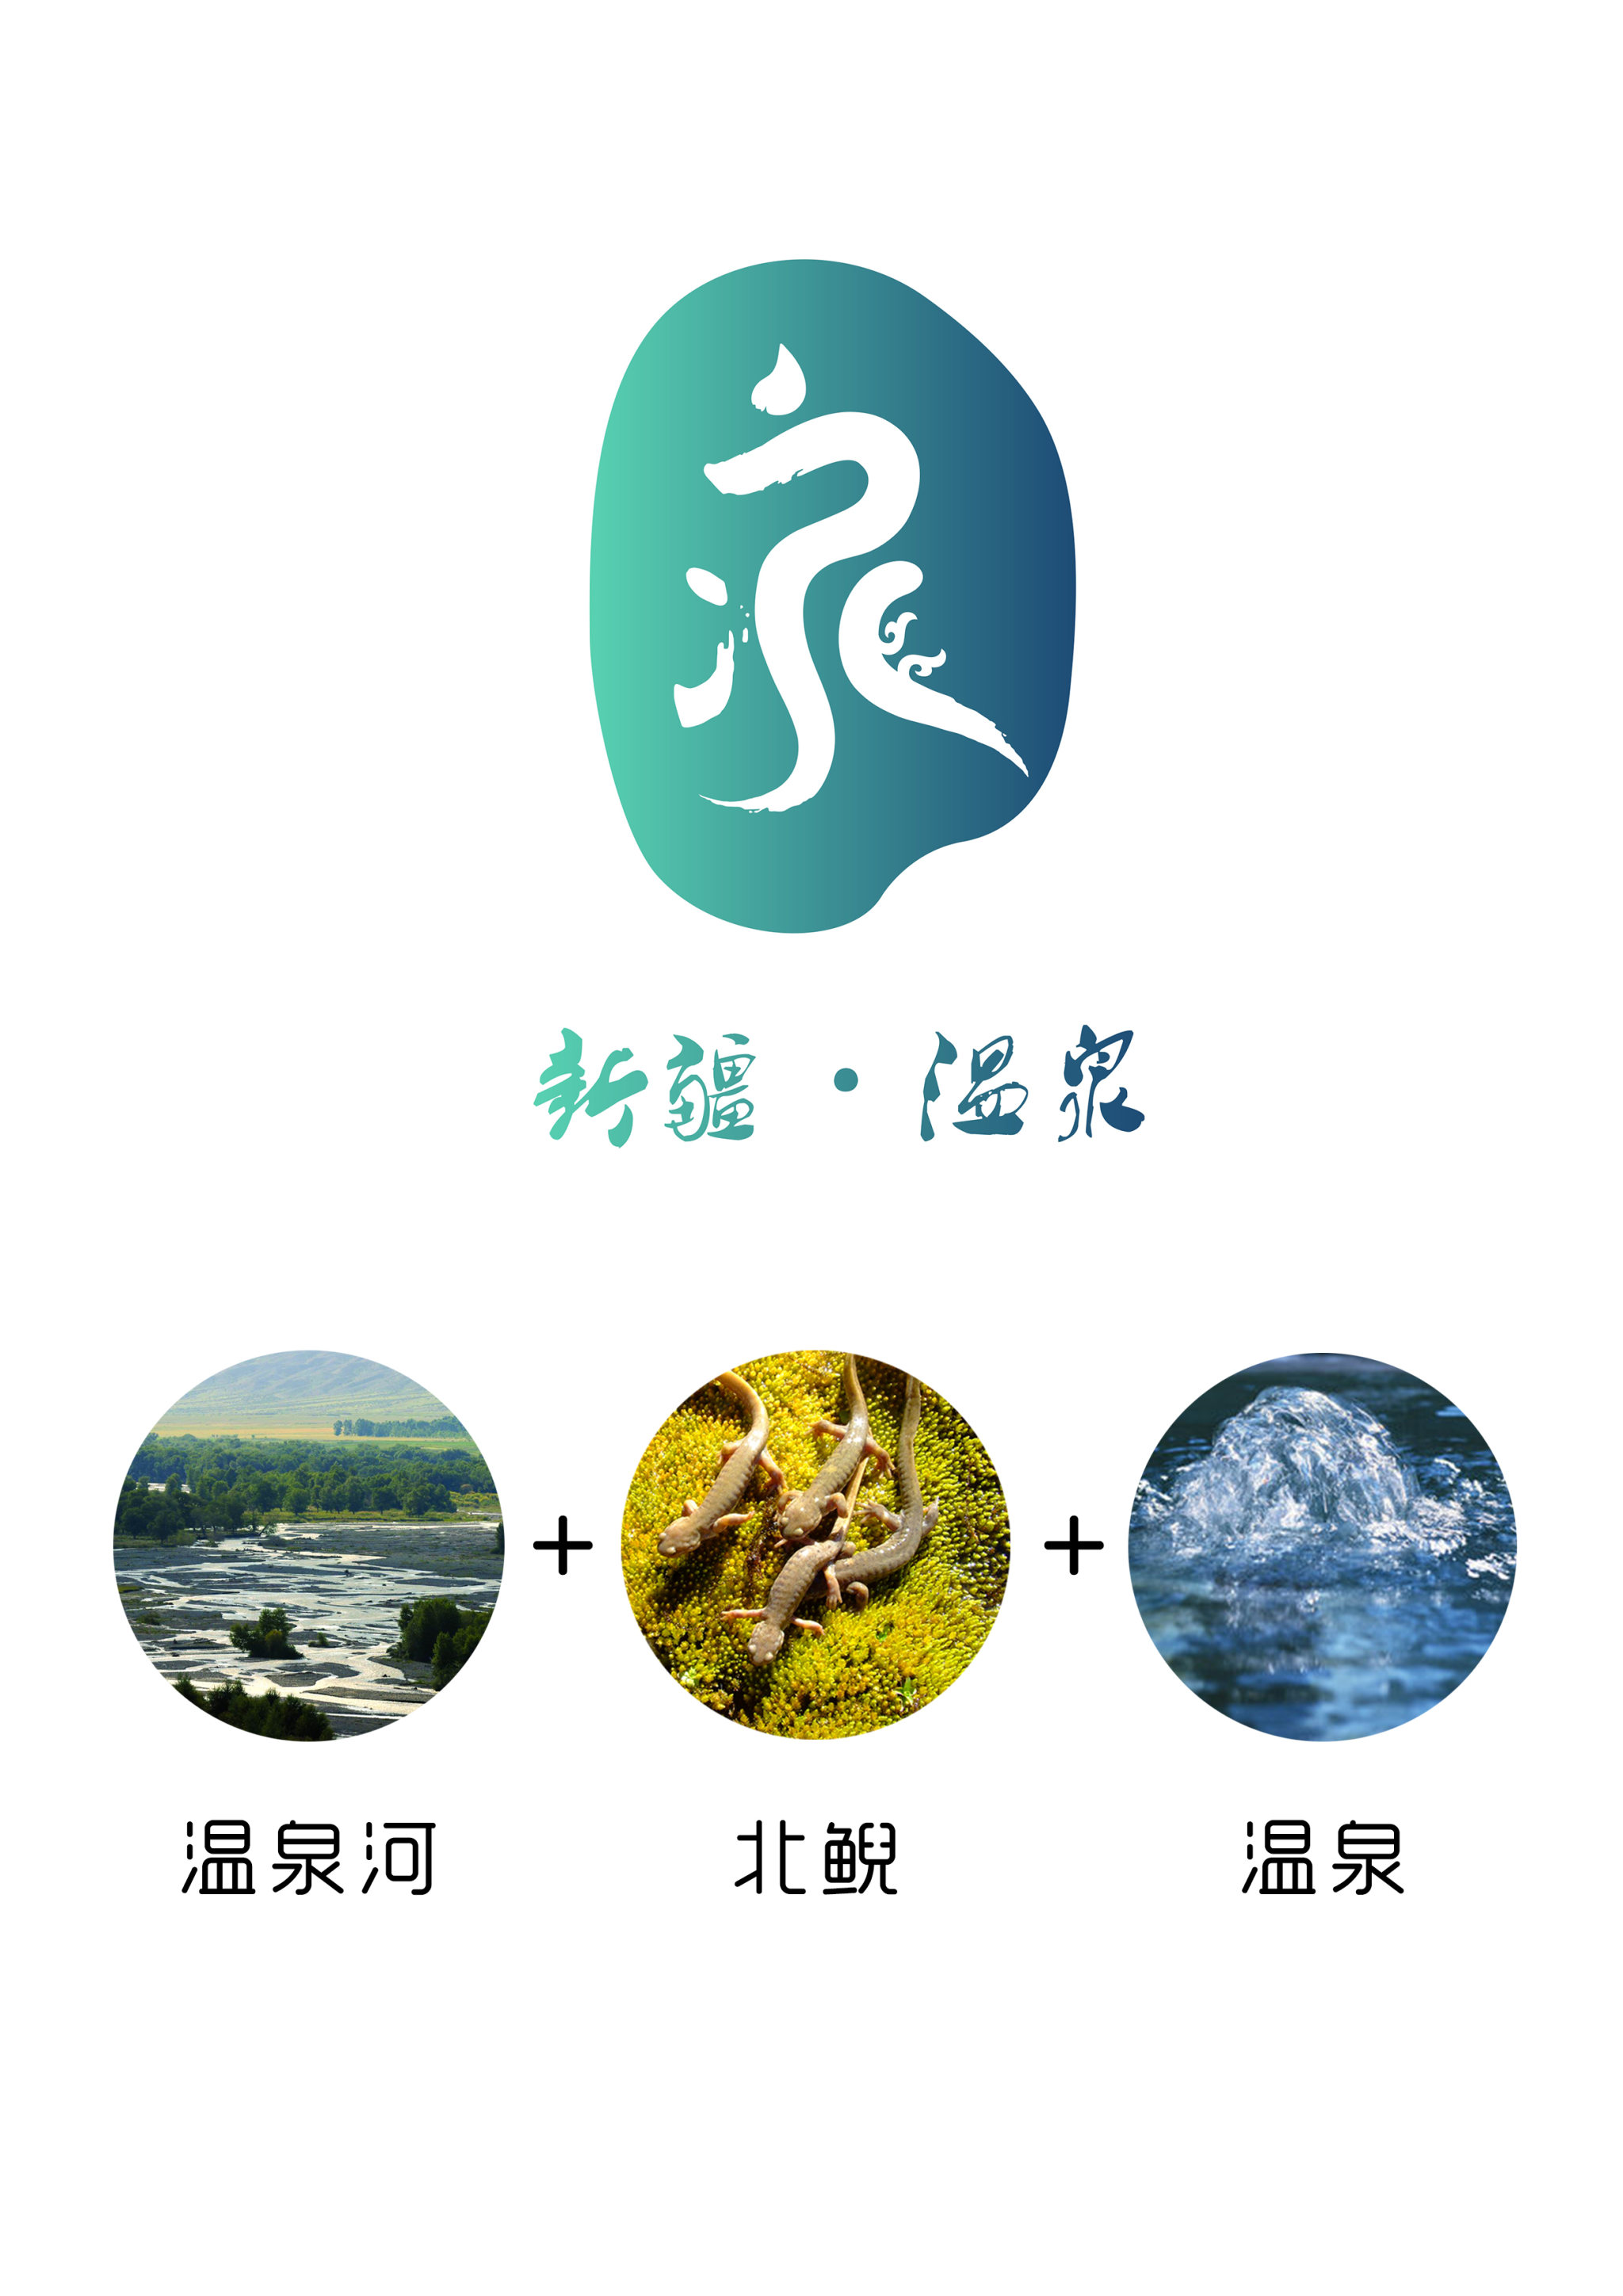 新疆温泉县旅游logo设计